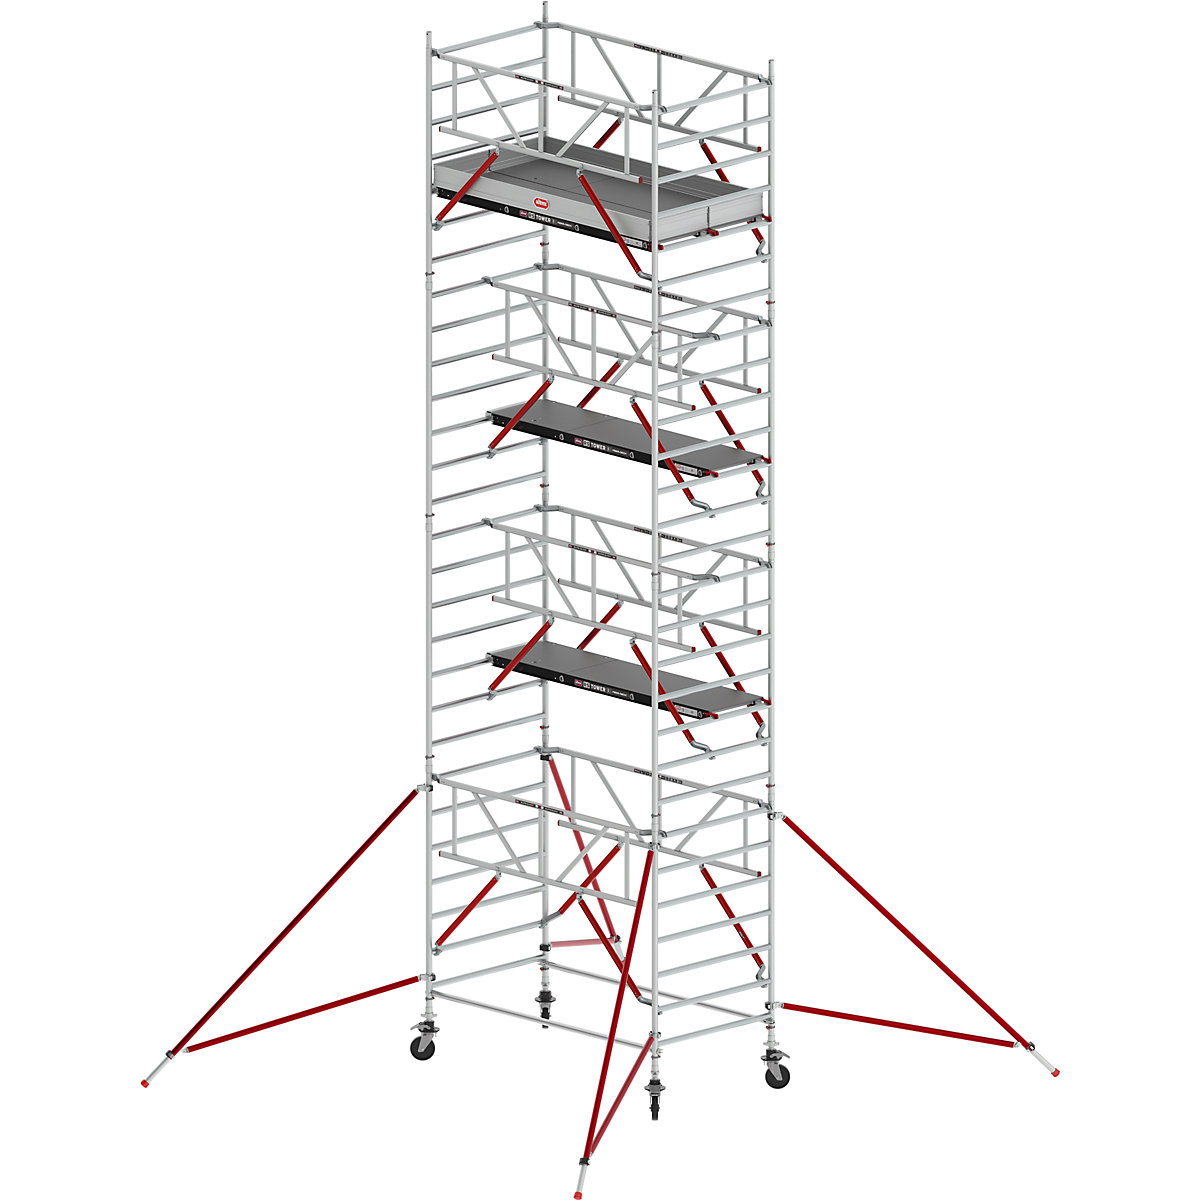 Fahrgerüst RS TOWER 52 breit Altrex, mit Holzplattform, Lange 2,45 m, Arbeitshöhe 9,20 m